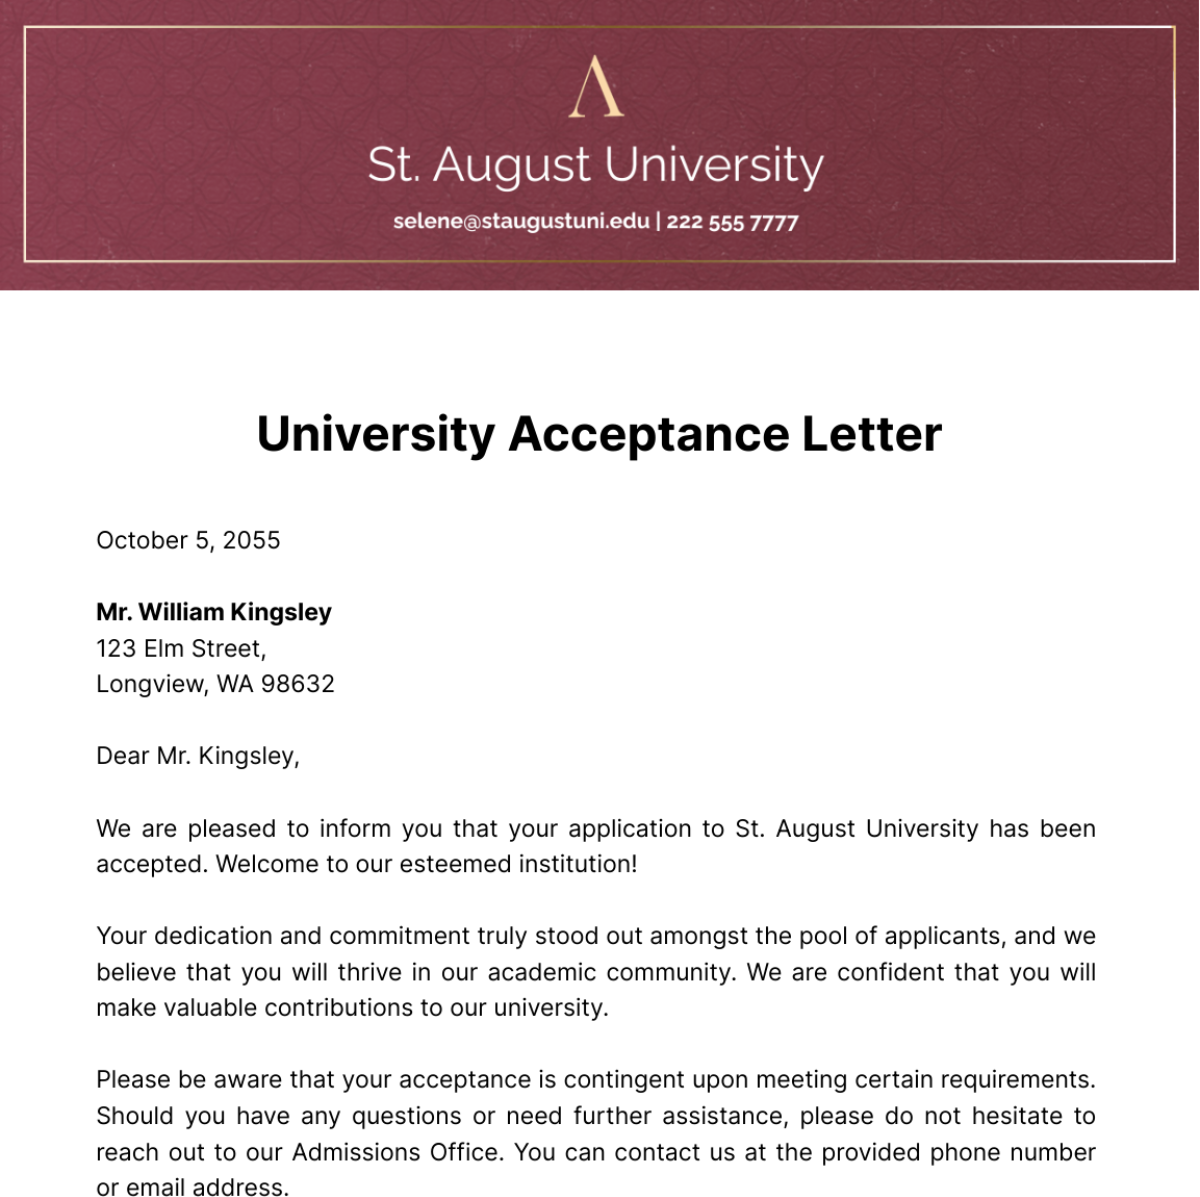 University Acceptance Letter Template